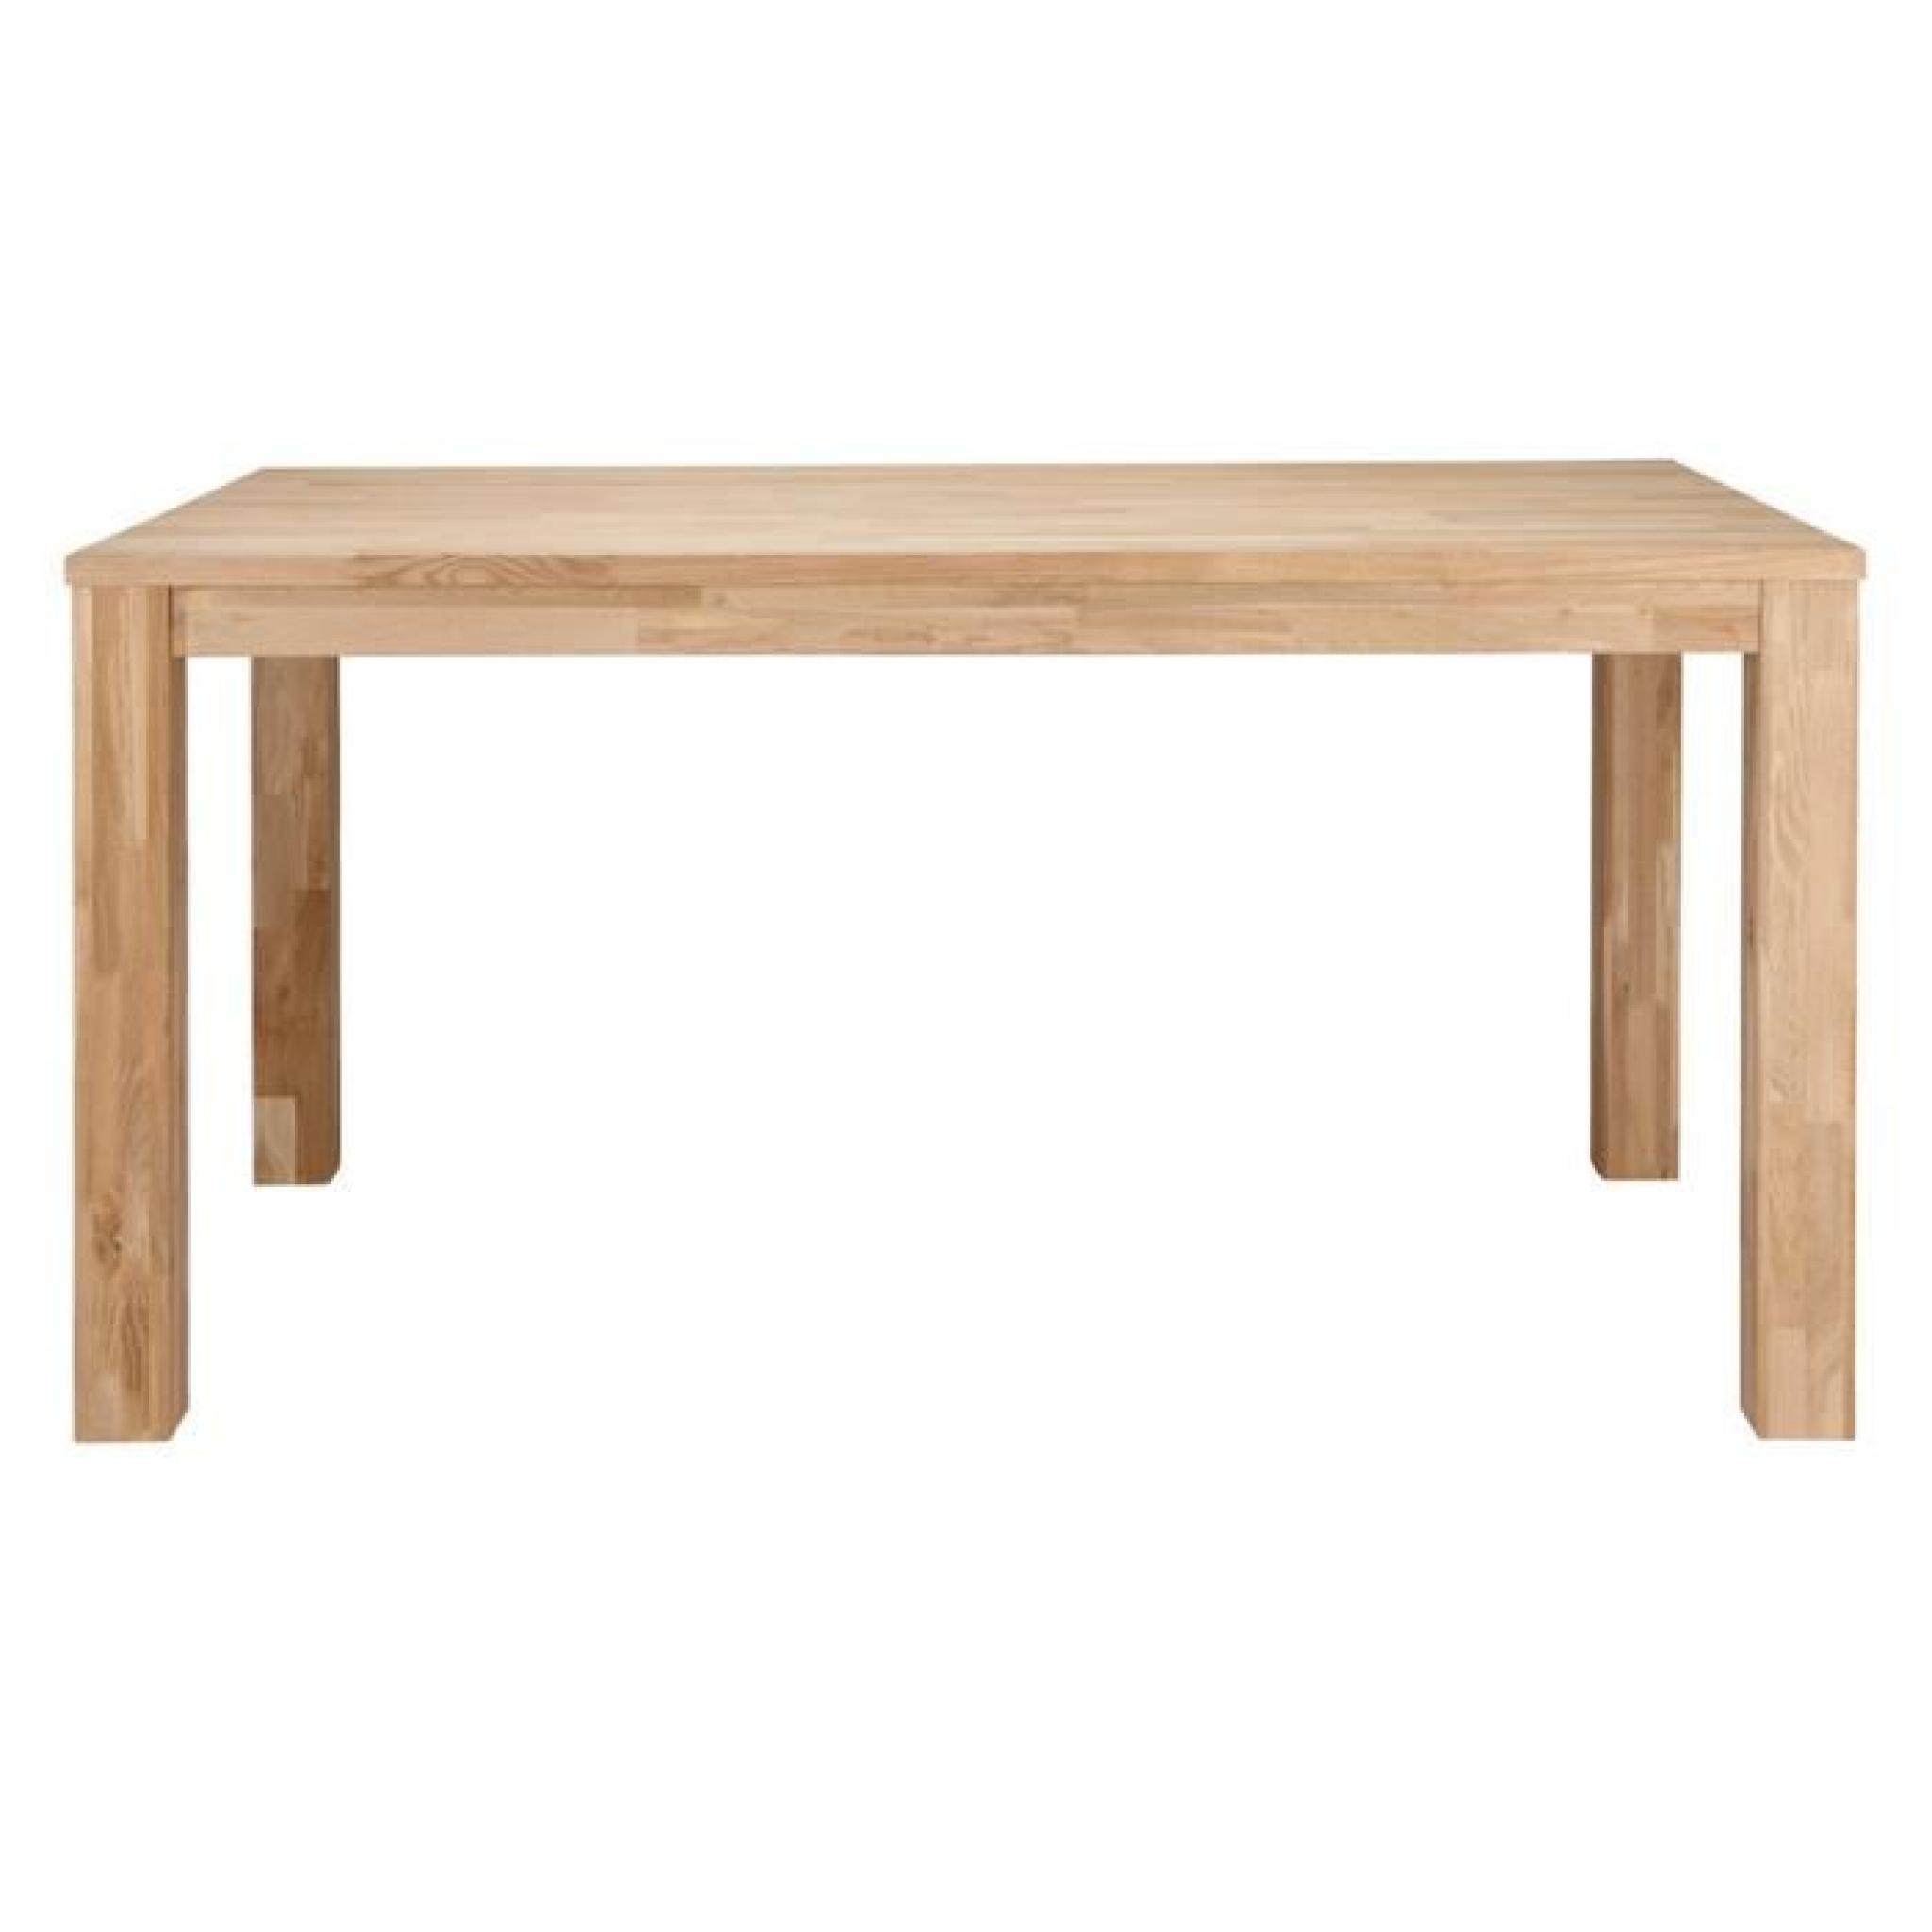 Table à manger rectangulaire chêne massif pieds 8x8cm, H 78 x L 150 x P 85 cm